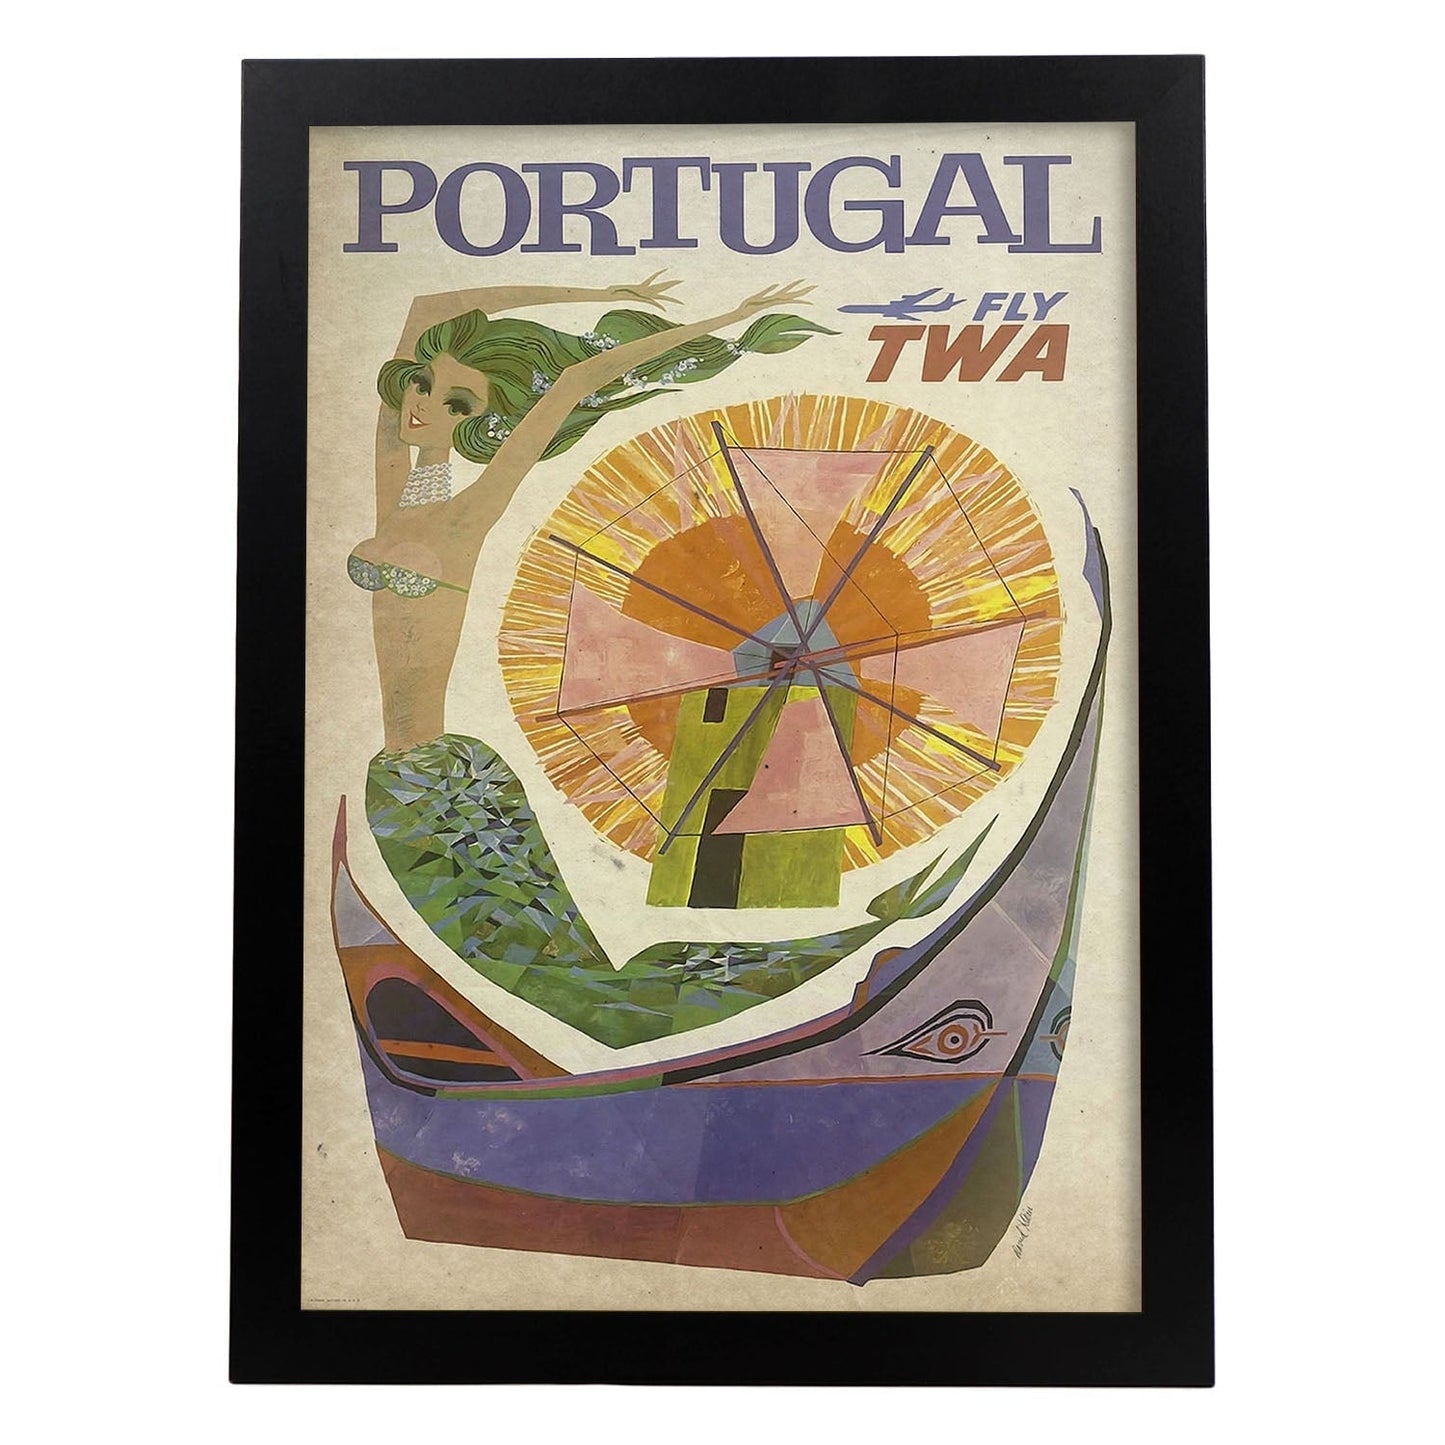 Poster vintage de Portugal. con imágenes vintage y de publicidad antigua.-Artwork-Nacnic-A4-Marco Negro-Nacnic Estudio SL